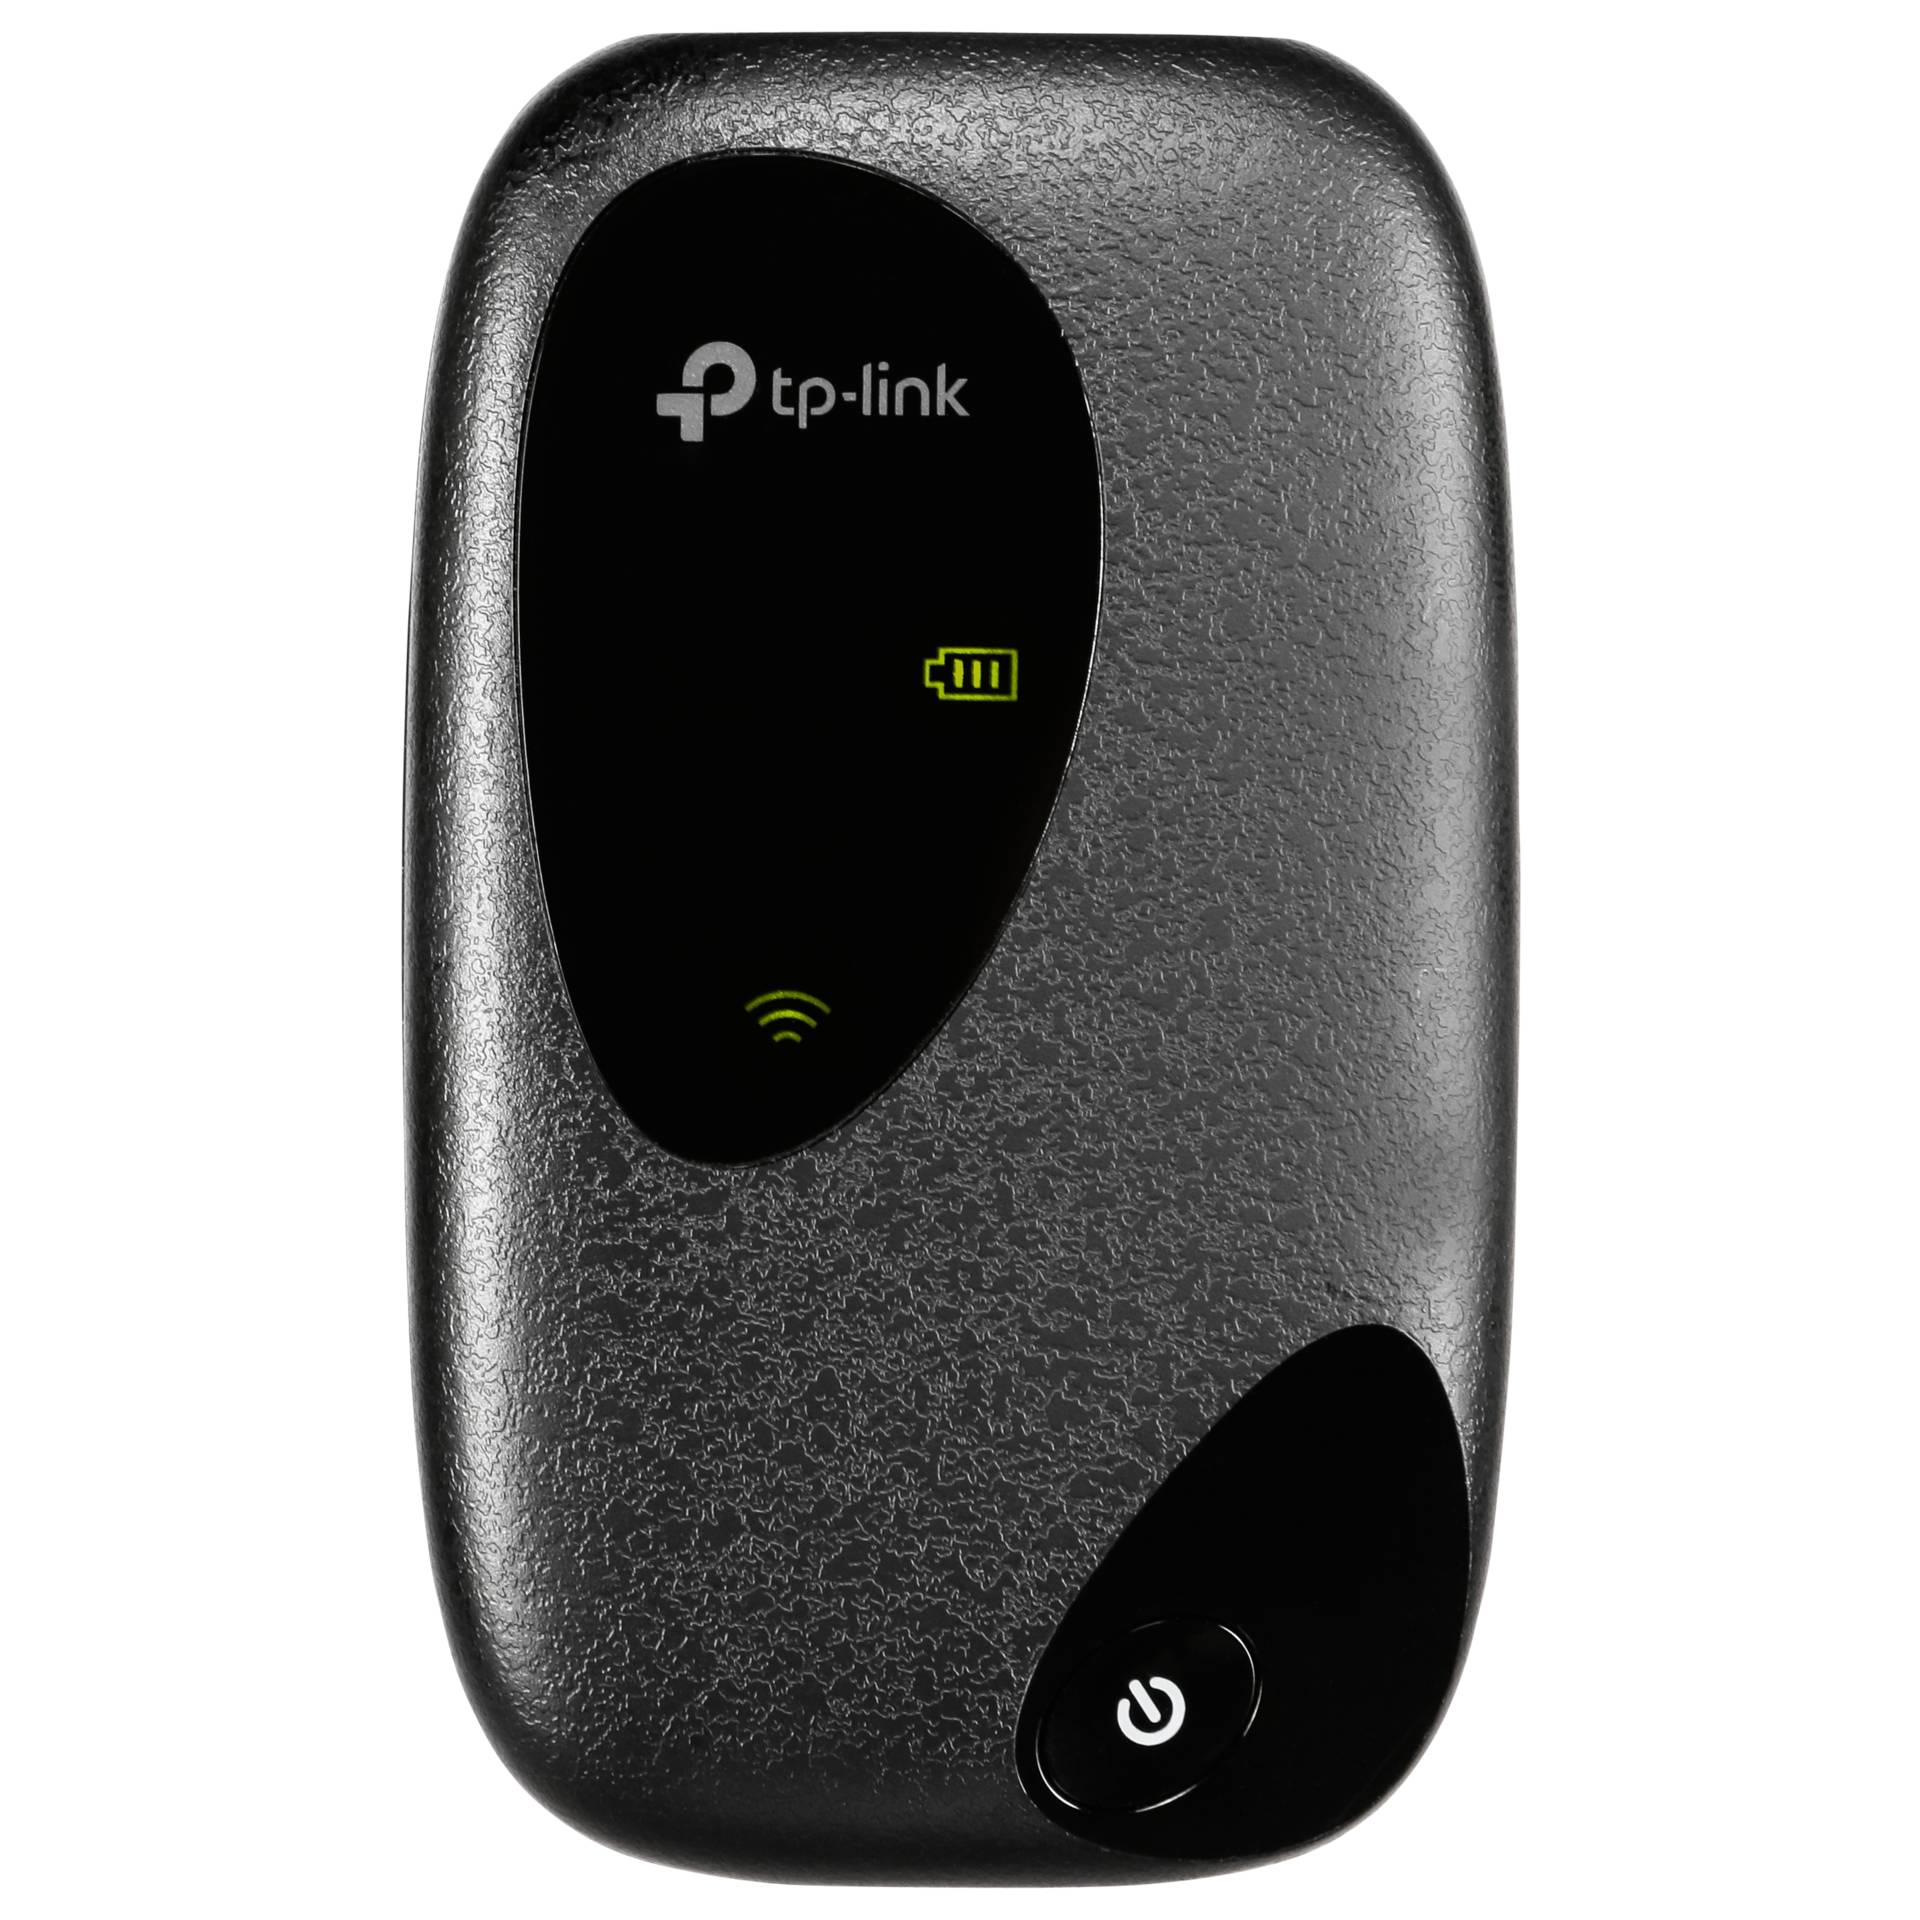 TP-Link M7200 schwarz LTE / WLAN-Router inkl. Akku daher ideal als mobiler Hotspot